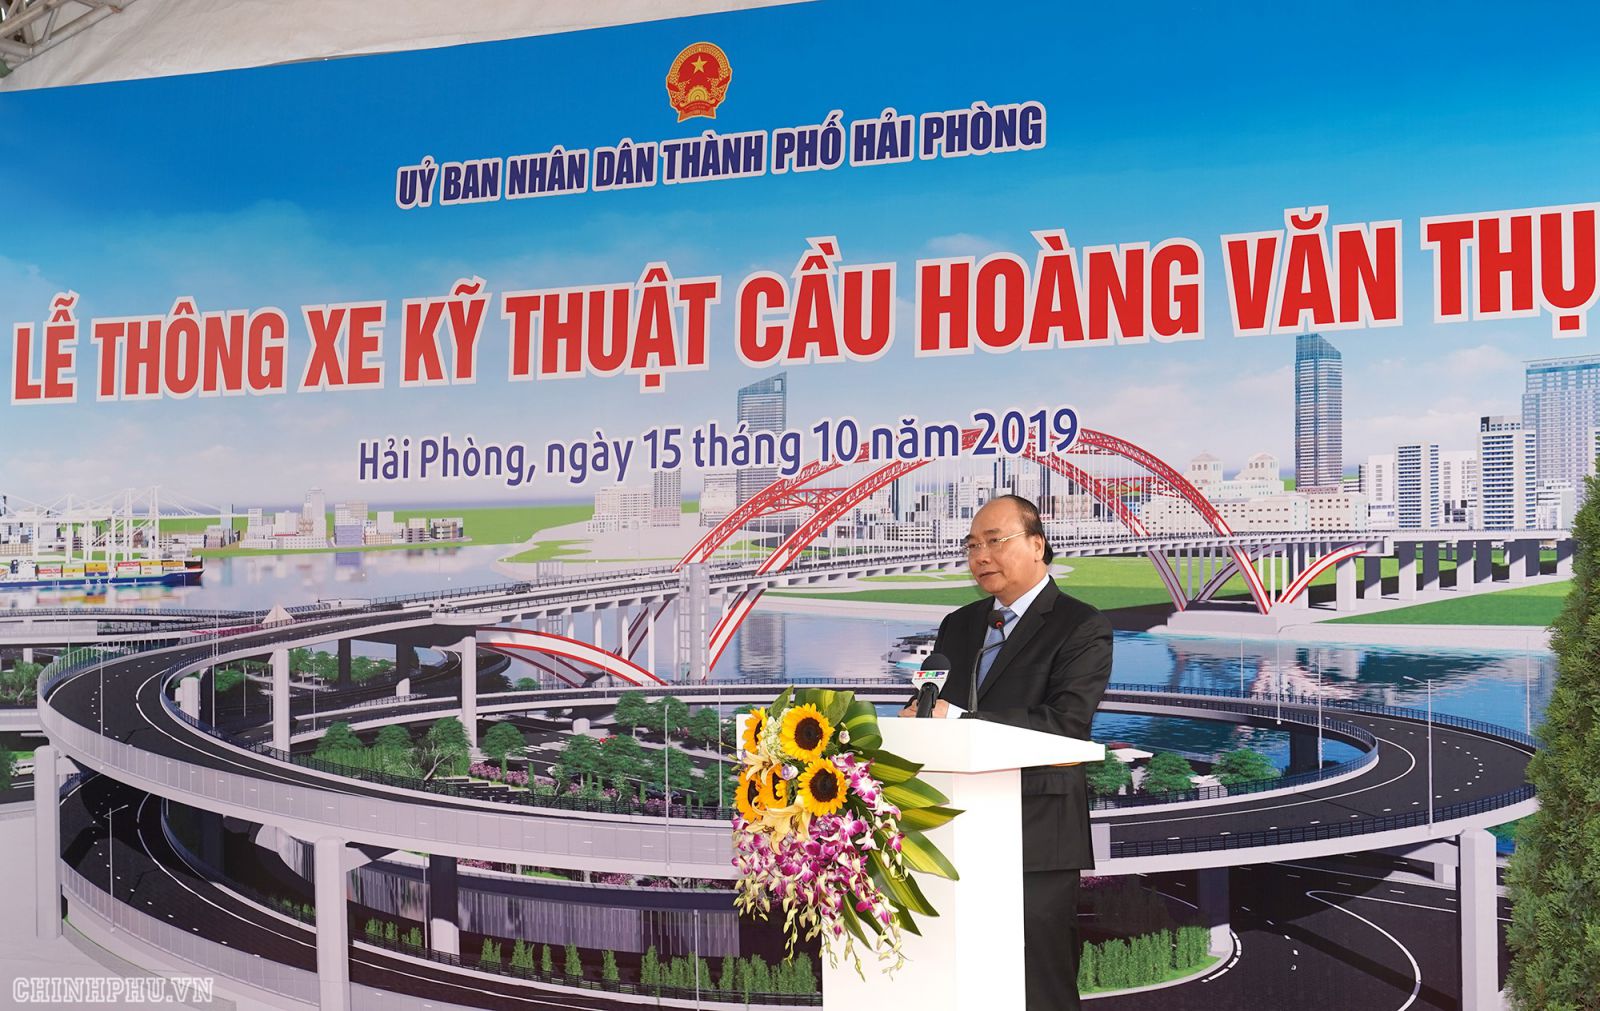 Thủ tướng Nguyễn Xuân Phúc: Việc hoàn thành cầu Hoàng Văn Thụ có ý nghĩa hết sức quan trọng trong việc mở ra không gian phát triển mới về phía Bắc sông Cấm.